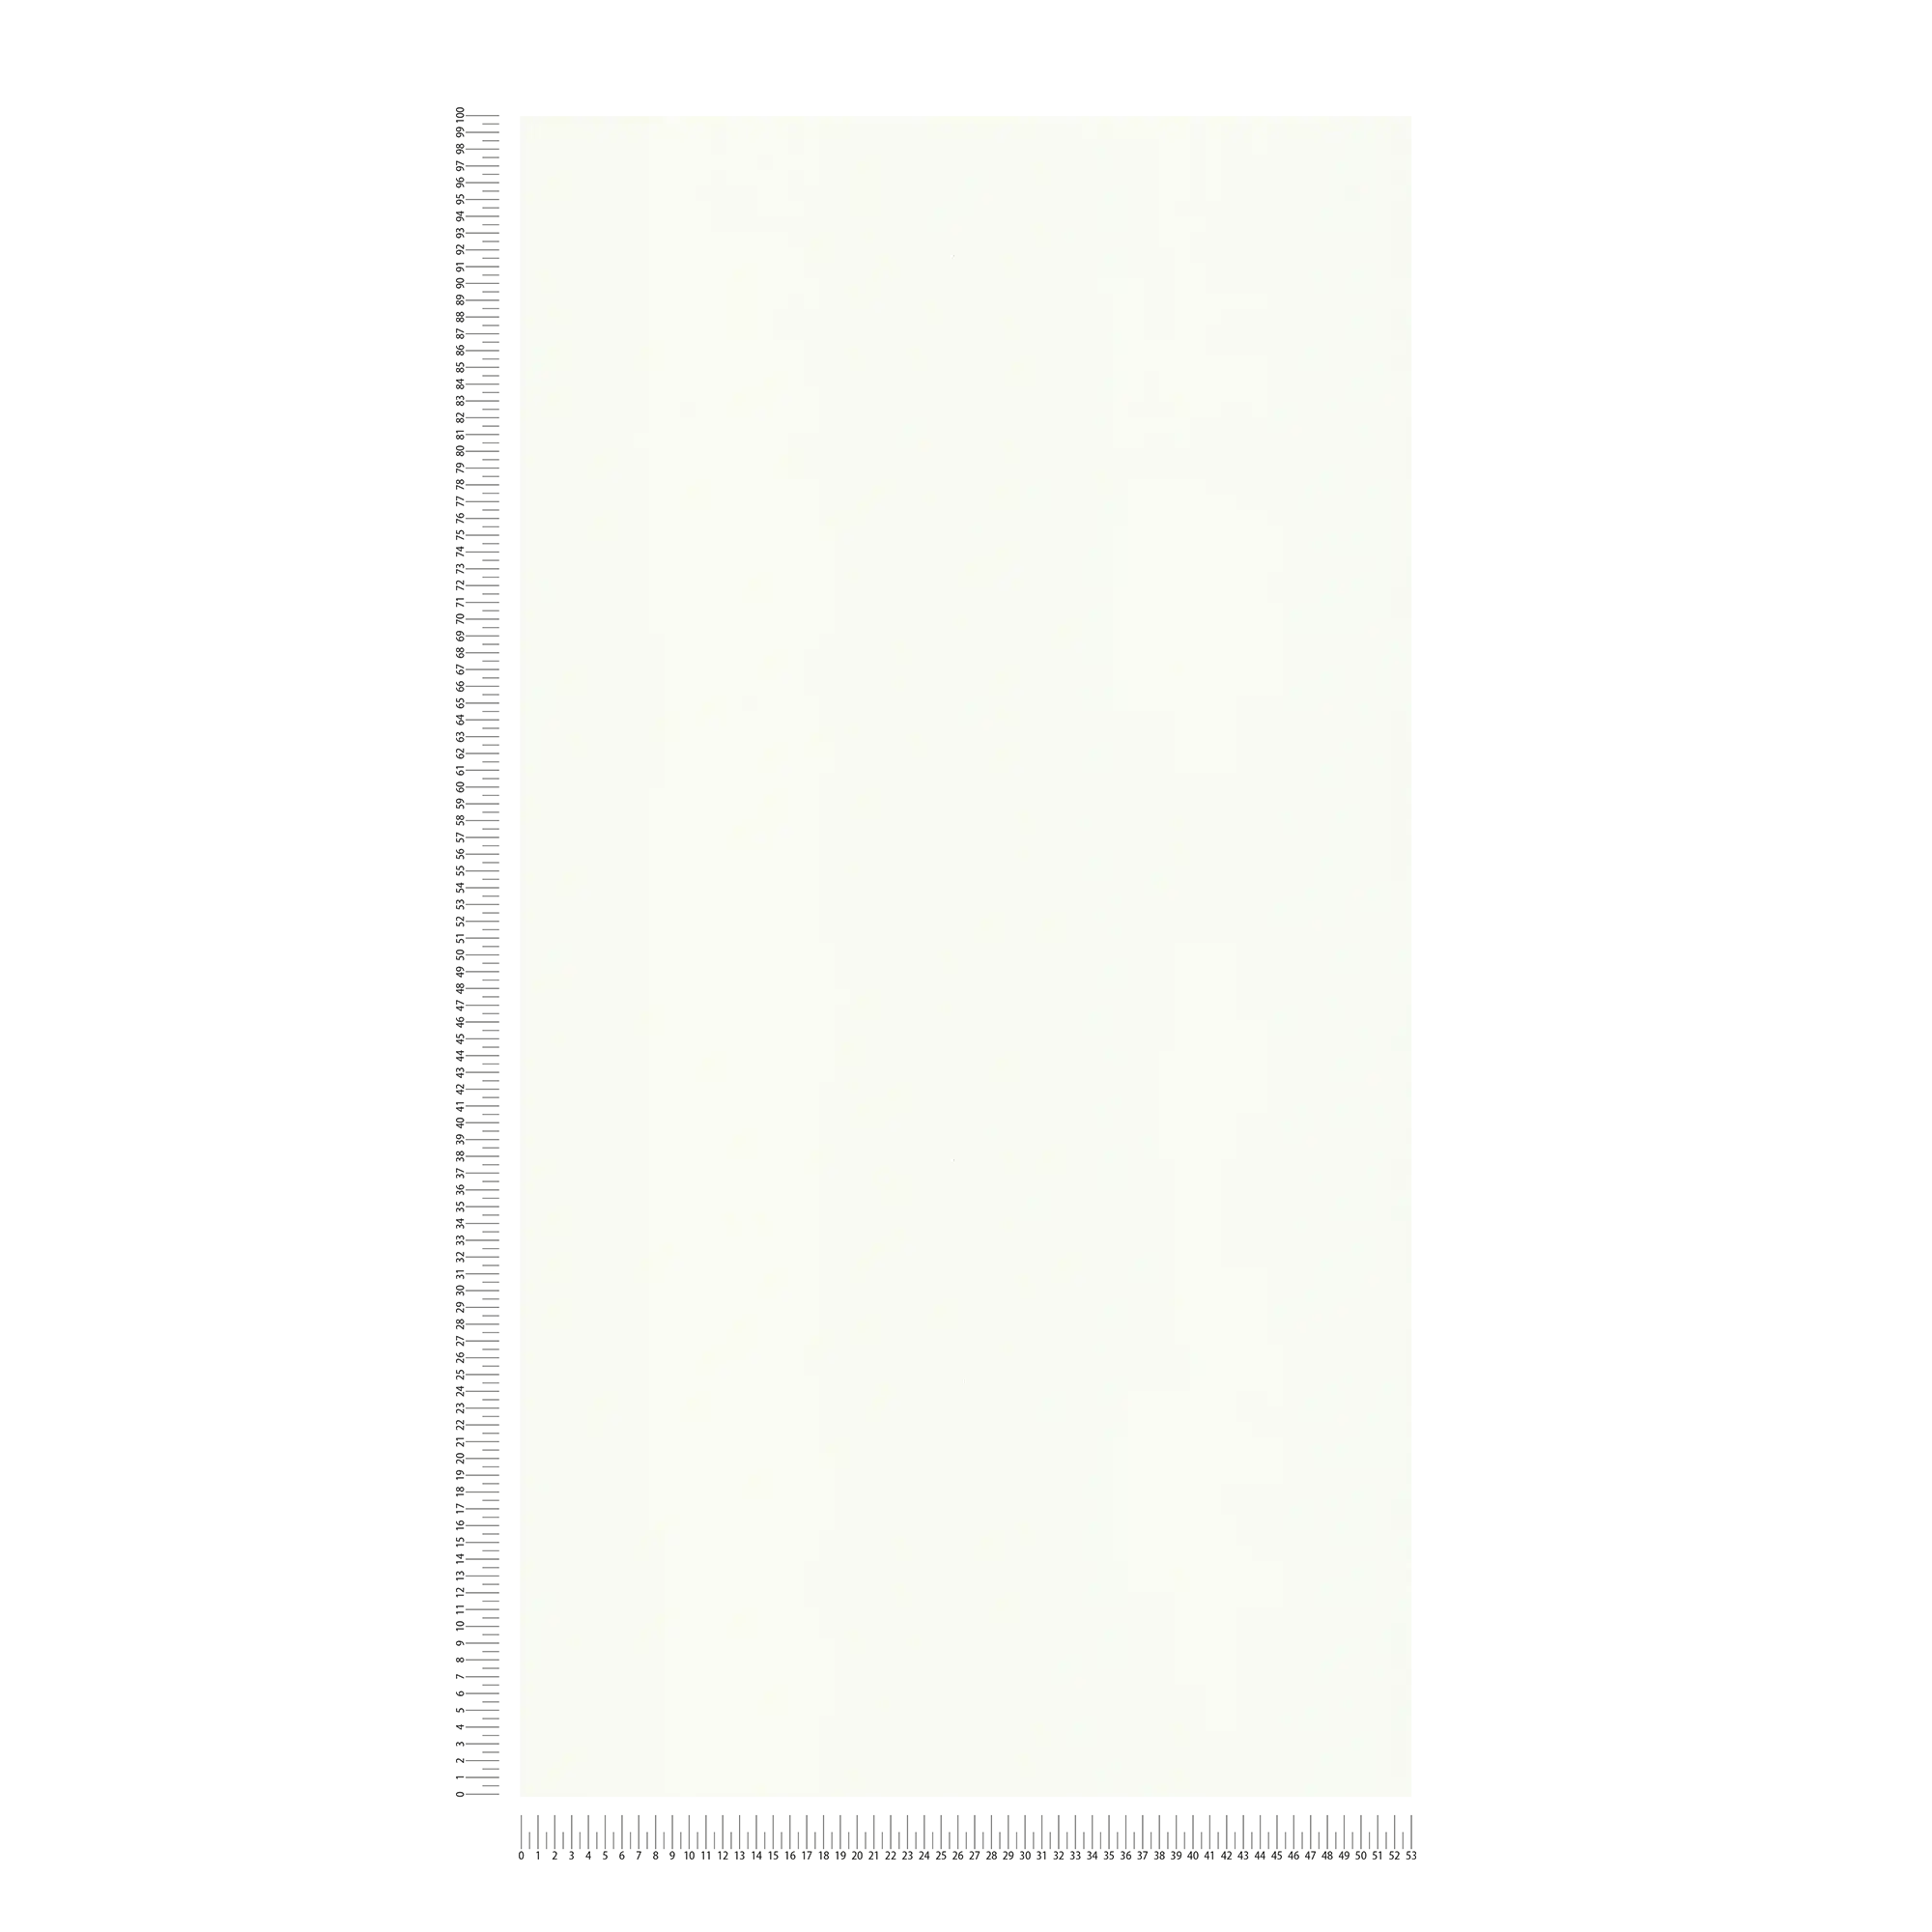             papier peint uni blanc, mat avec surface structurée
        